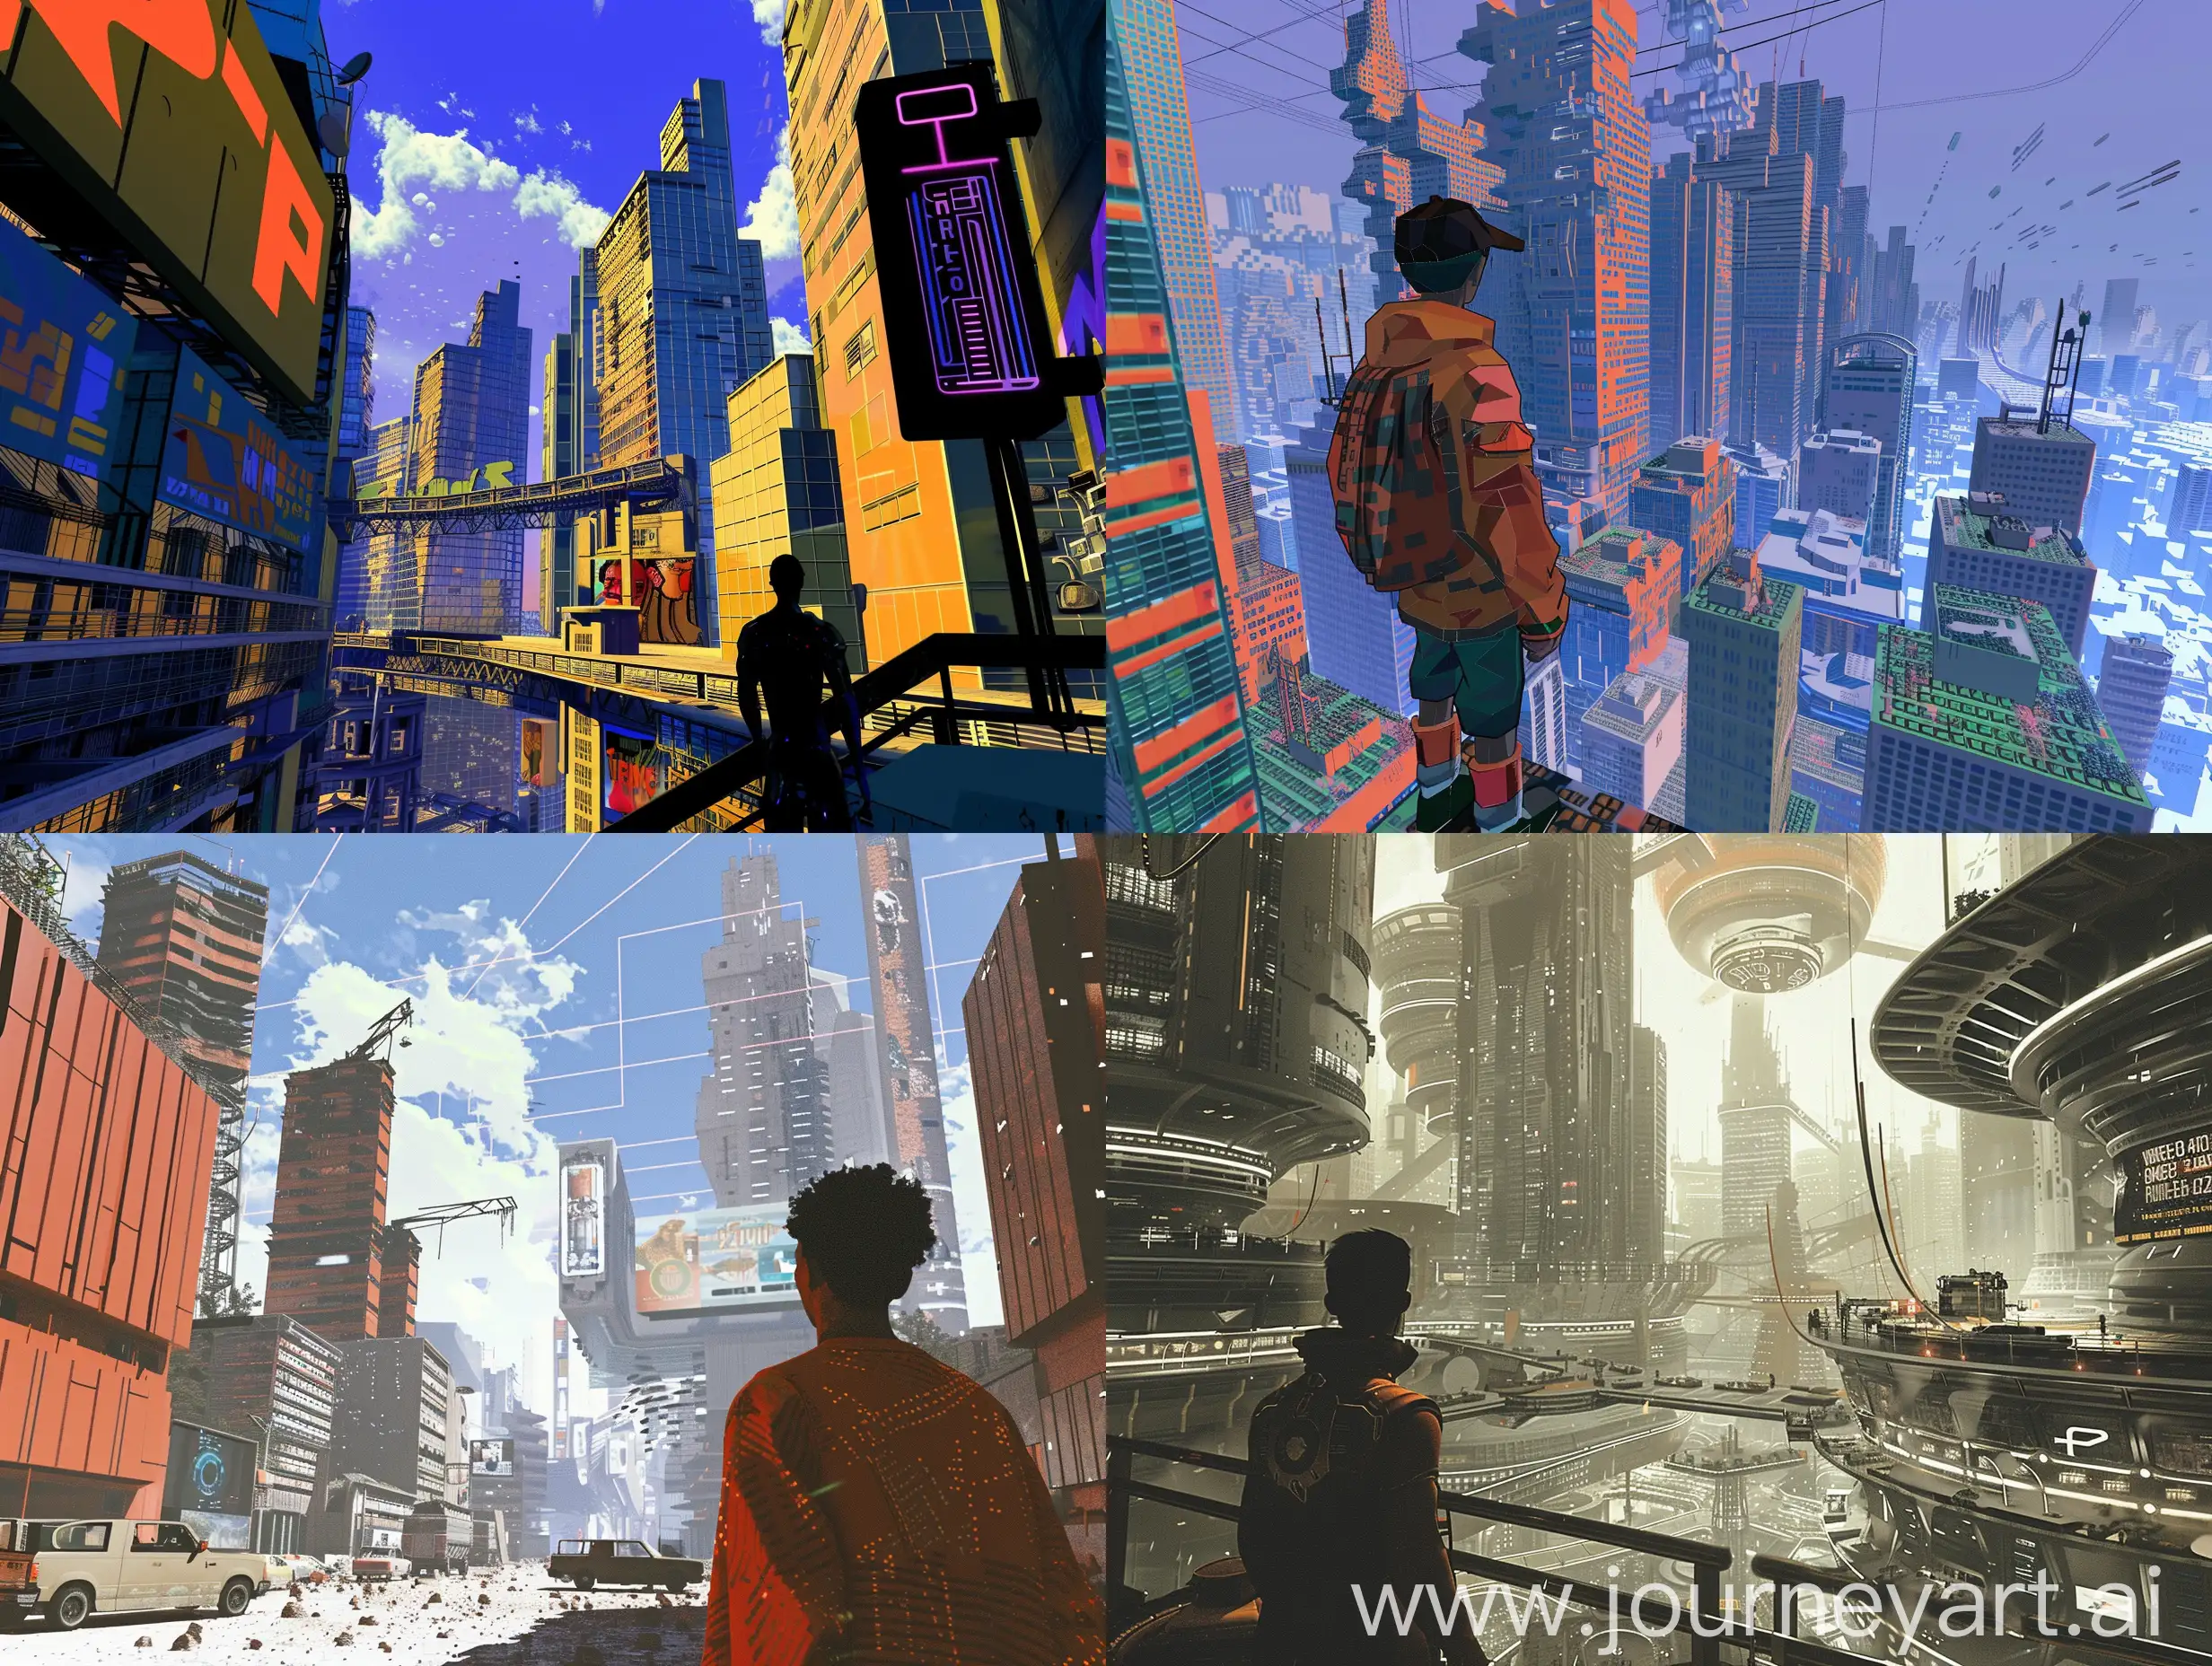 Urban-Dweller-in-Retro-Futuristic-Cityscape-Nostalgic-PlayStation-2Inspired-Scene